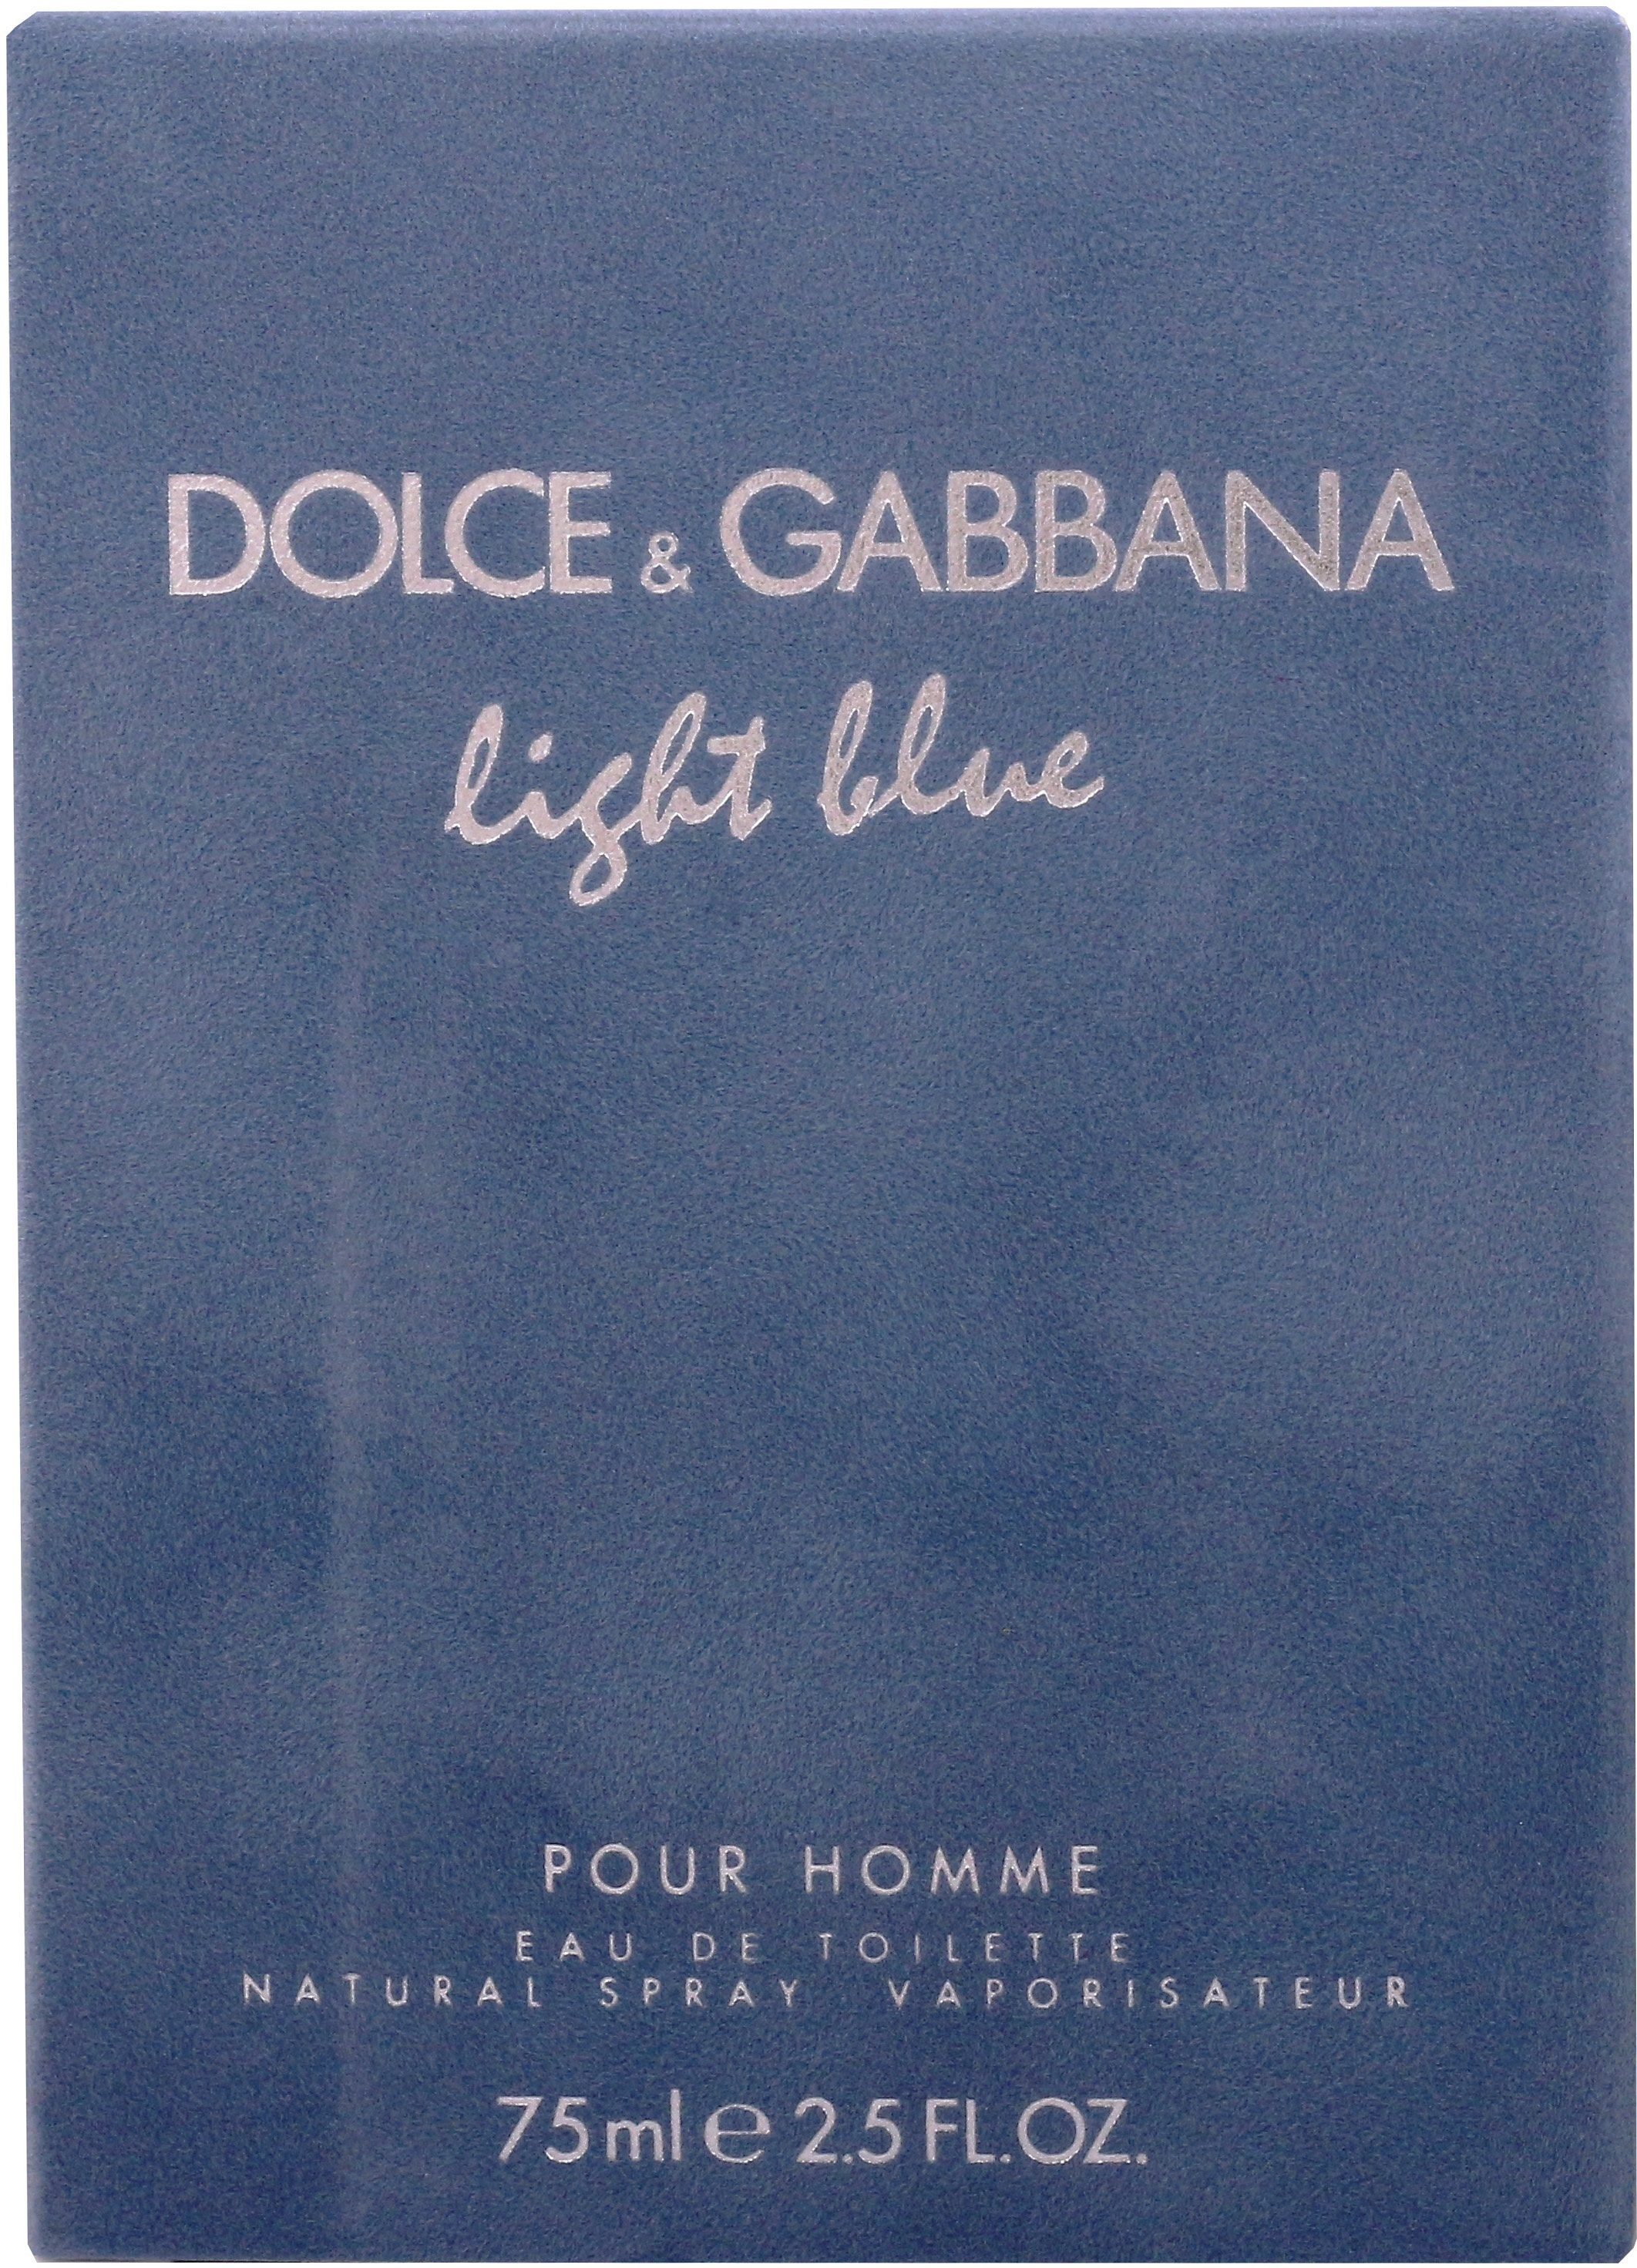 GABBANA him DOLCE Pour & de Light Männer, Blue Parfum, Eau Toilette EdT for Homme, für